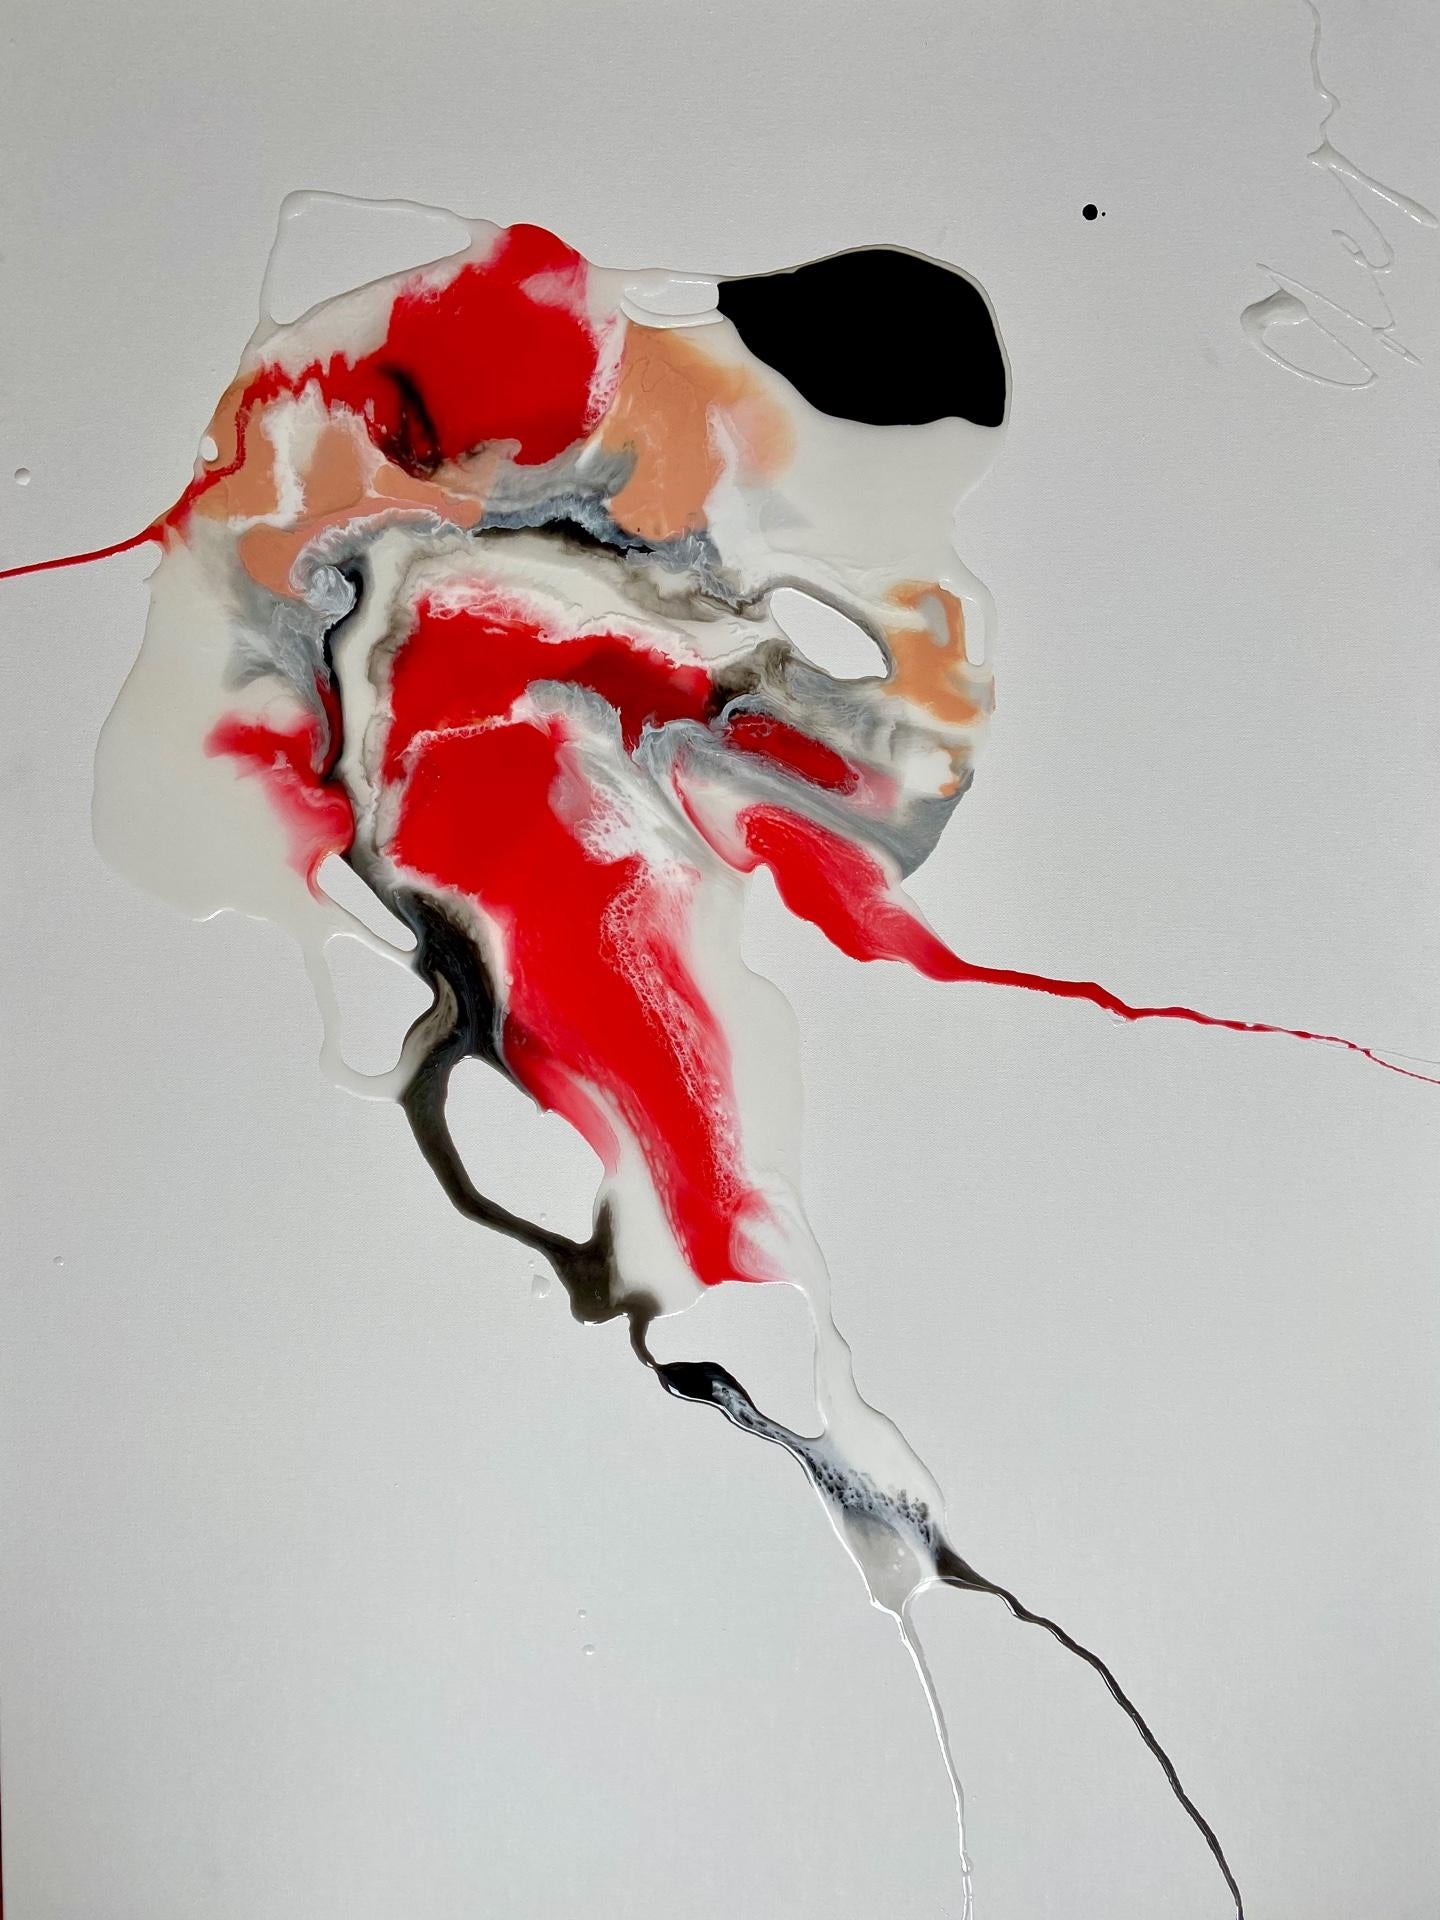 Man's Heart (Cœur humain) - peinture abstraite en rouge, noir, blanc, couleur pêche - Gris Abstract Painting par Lena Cher